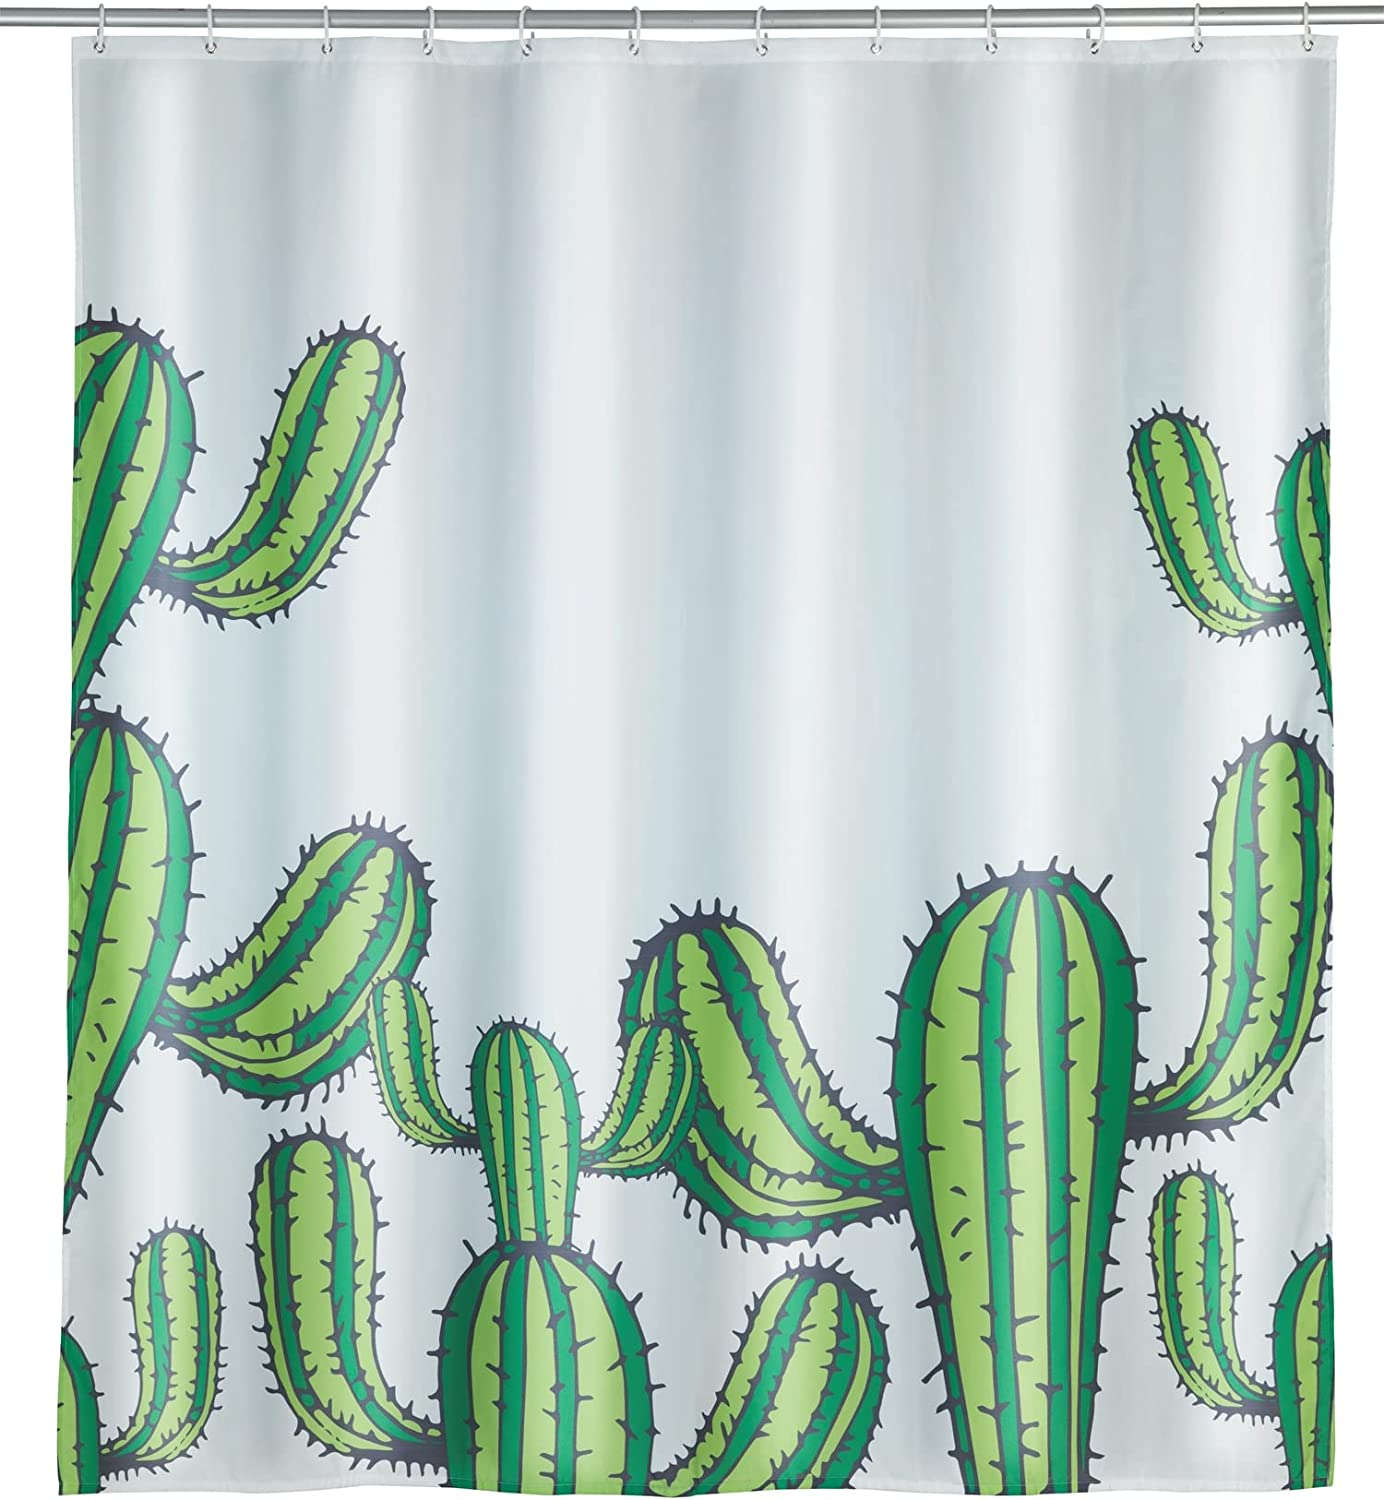 Duschvorhang Cactus, Textil-Vorhang fürs Badezimmer, mit Ringen zur Befestigung an der Duschstange, waschbar, wasserabweisend, 180 x 200 cm